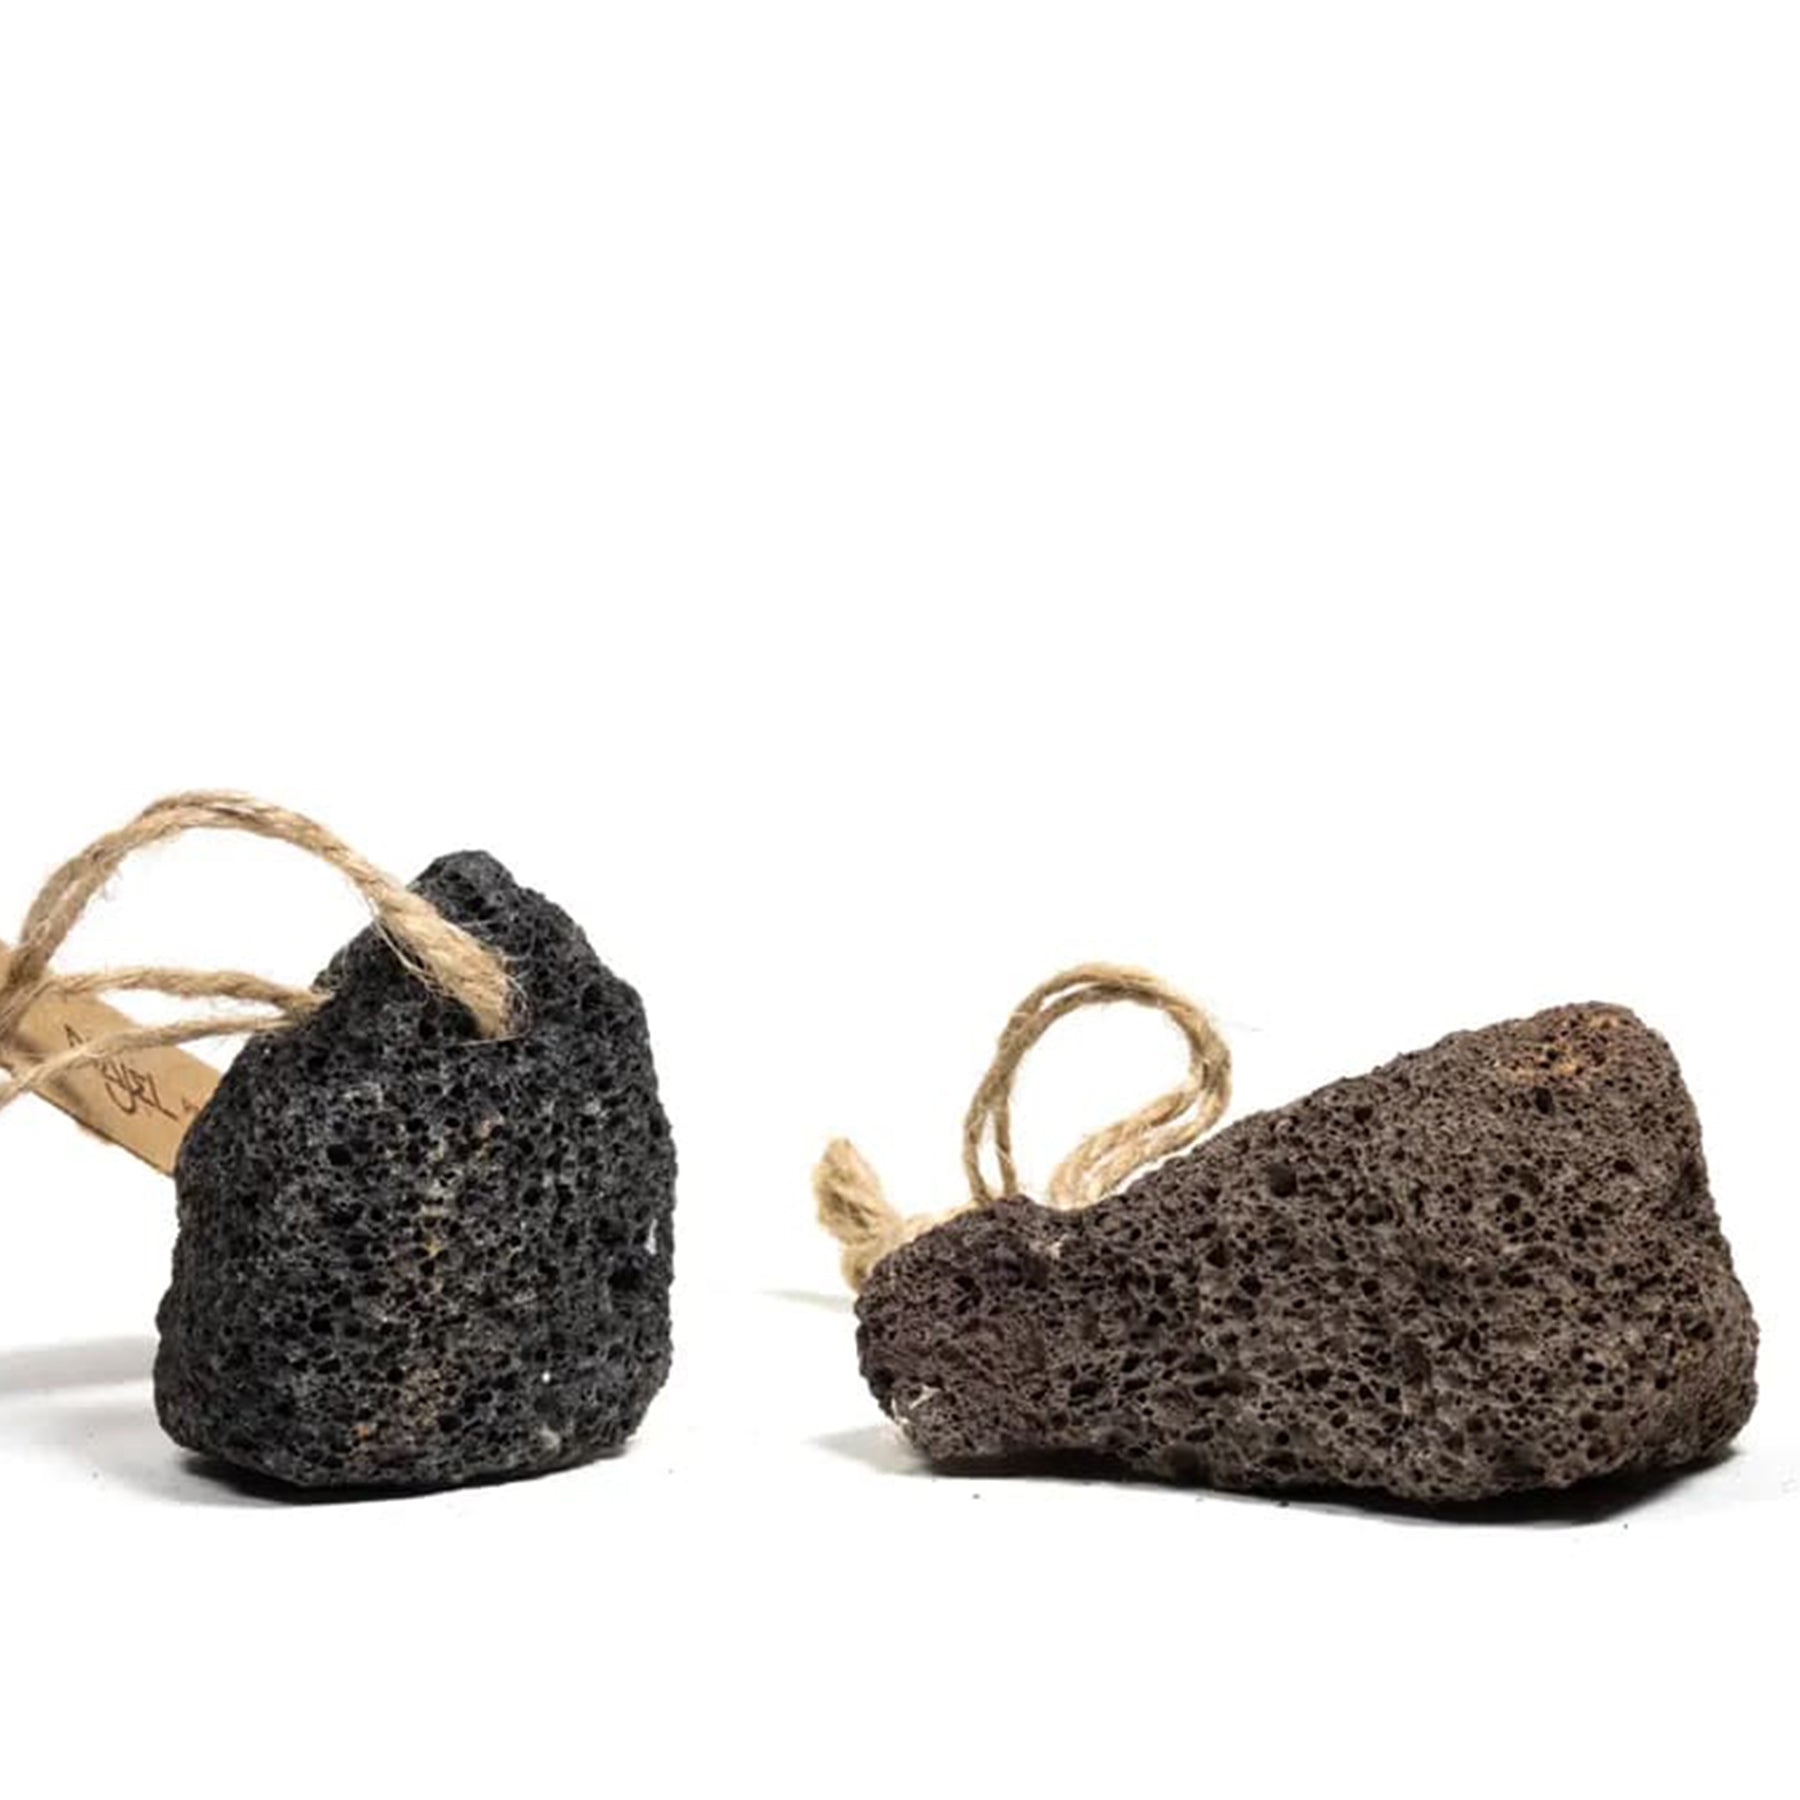 Pedra-pomes de Rocha Vulcânica natural com Cordão de Suspensão | Arogya Shop